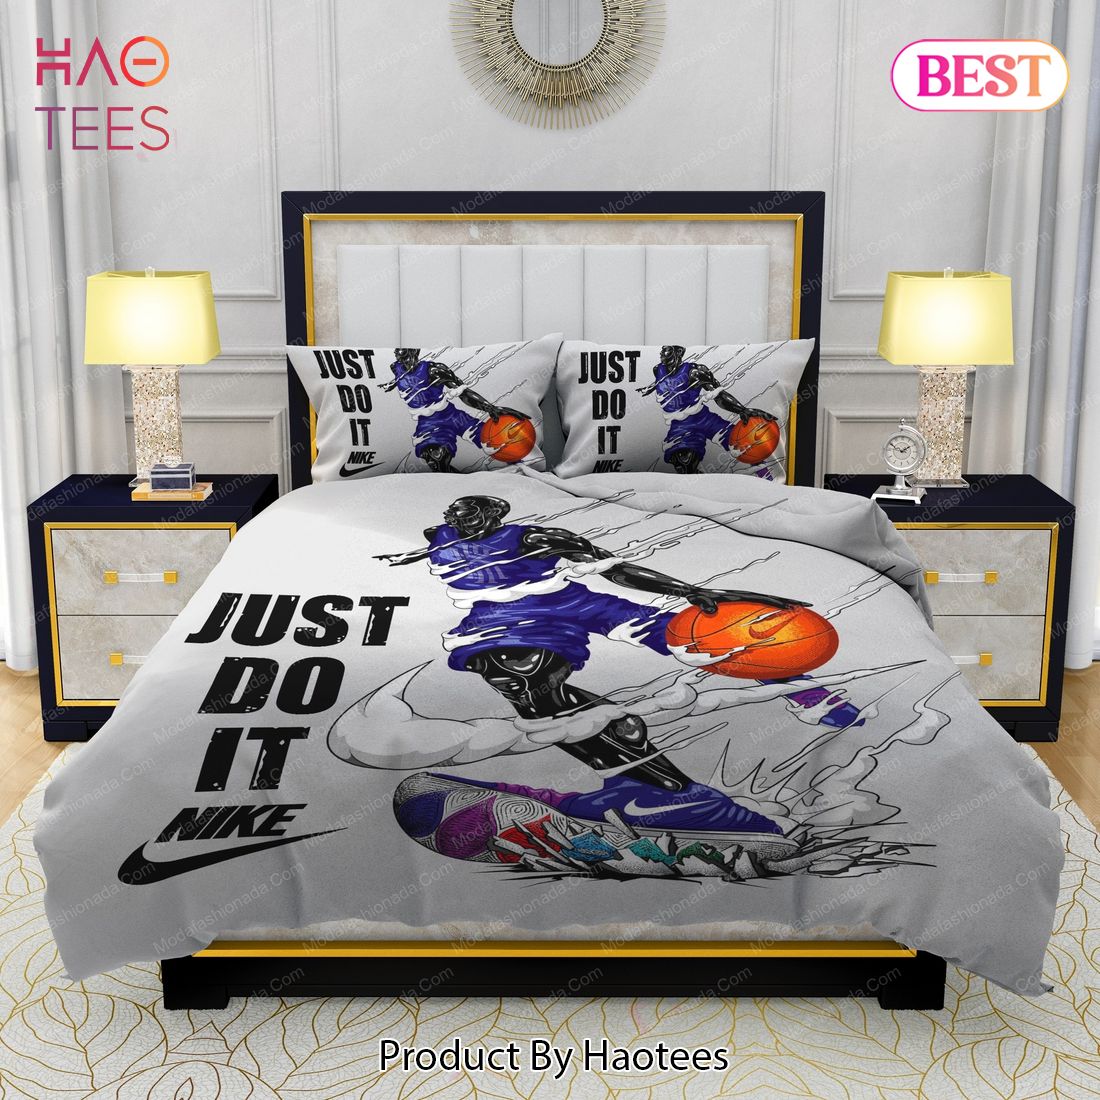 Nike Air Jordan JUST DO IT Design & Quality Comfortable 4 Pieces Bedding Sets Bed Sets, Bedroom Sets, Comforter Sets, Duvet Cover, Bedspread